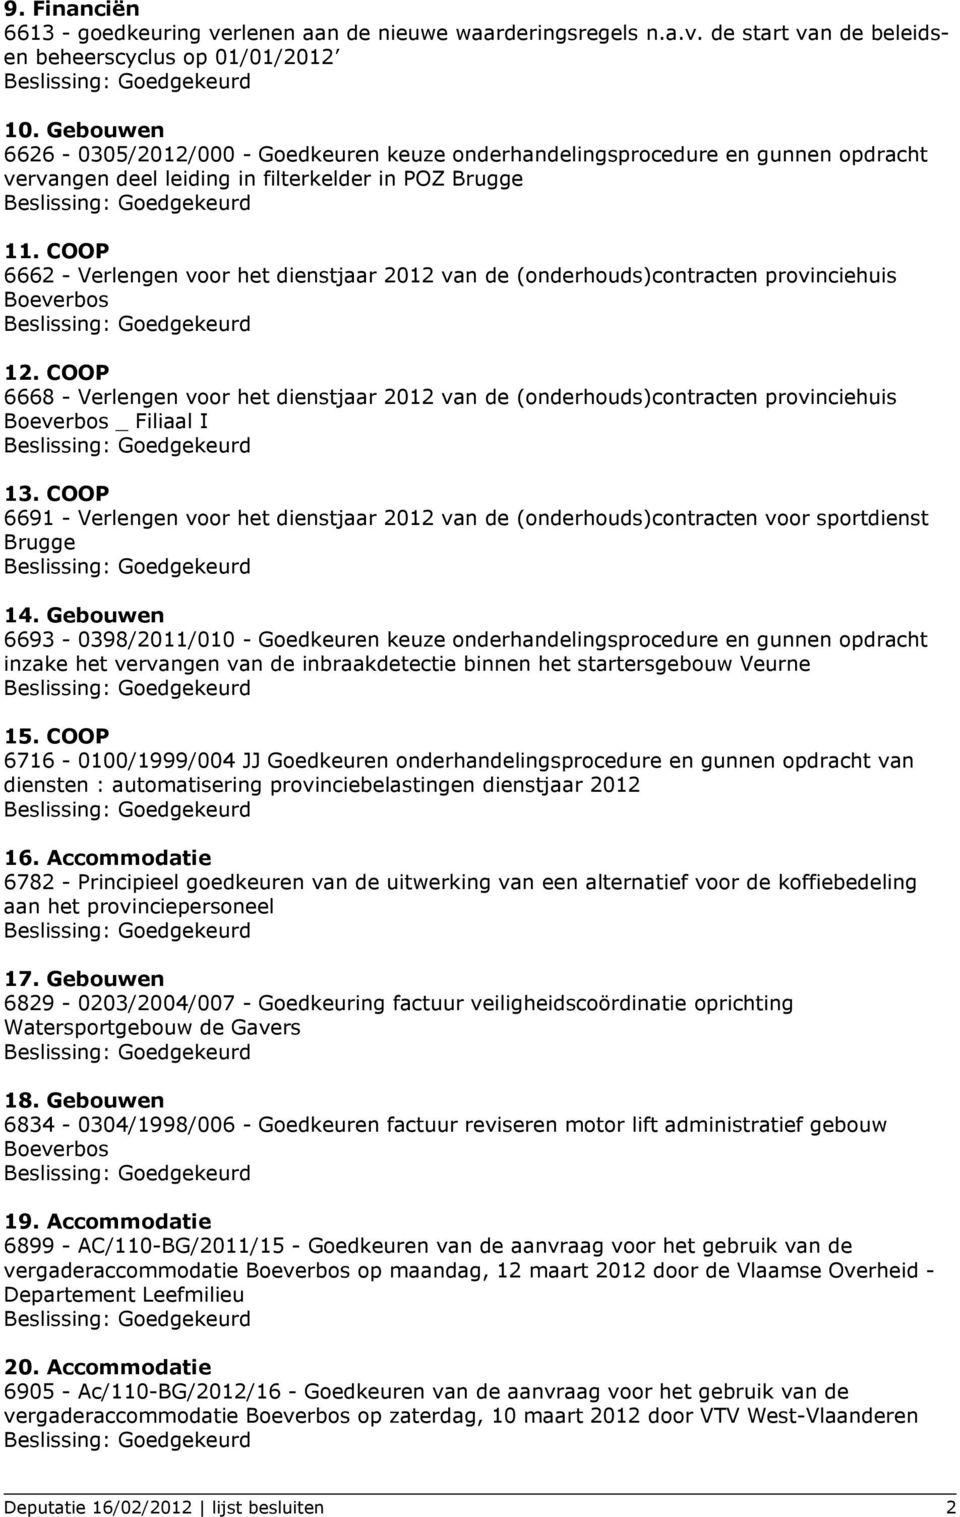 COOP 6662 - Verlengen voor het dienstjaar 2012 van de (onderhouds)contracten provinciehuis Boeverbos 12.